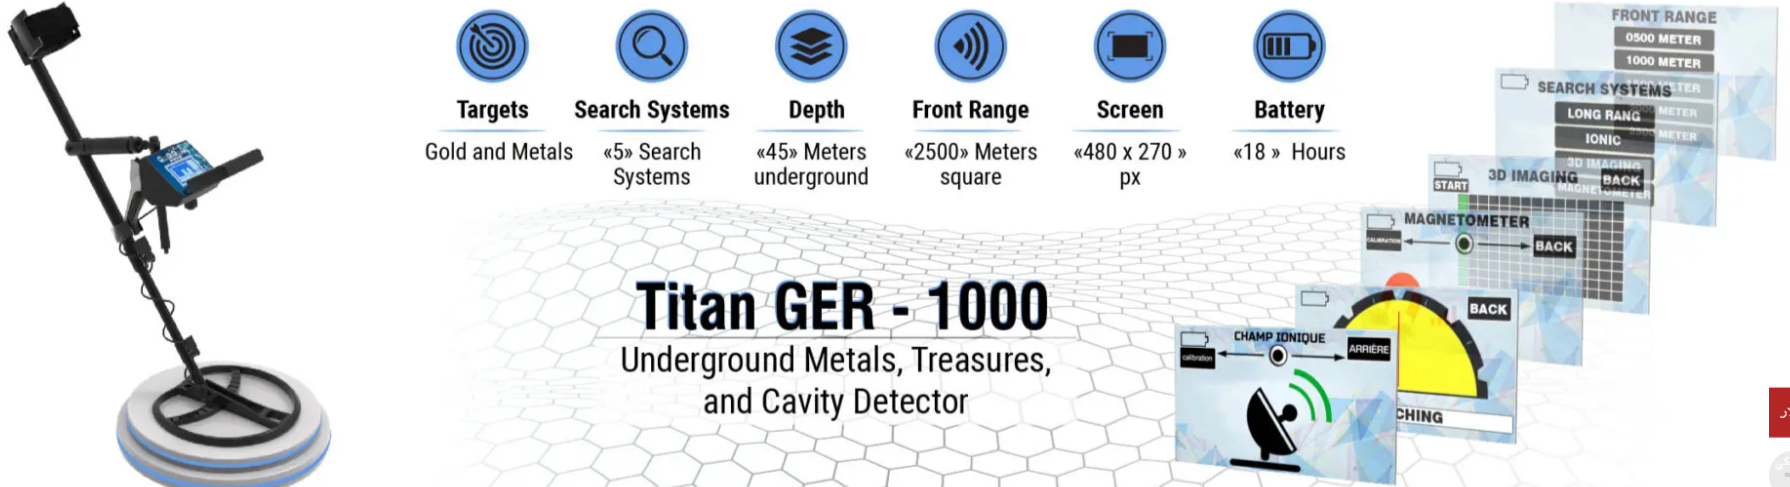 اقوي جهاز  تيتان جير 1000 لكشف الذهب والمعادن Do